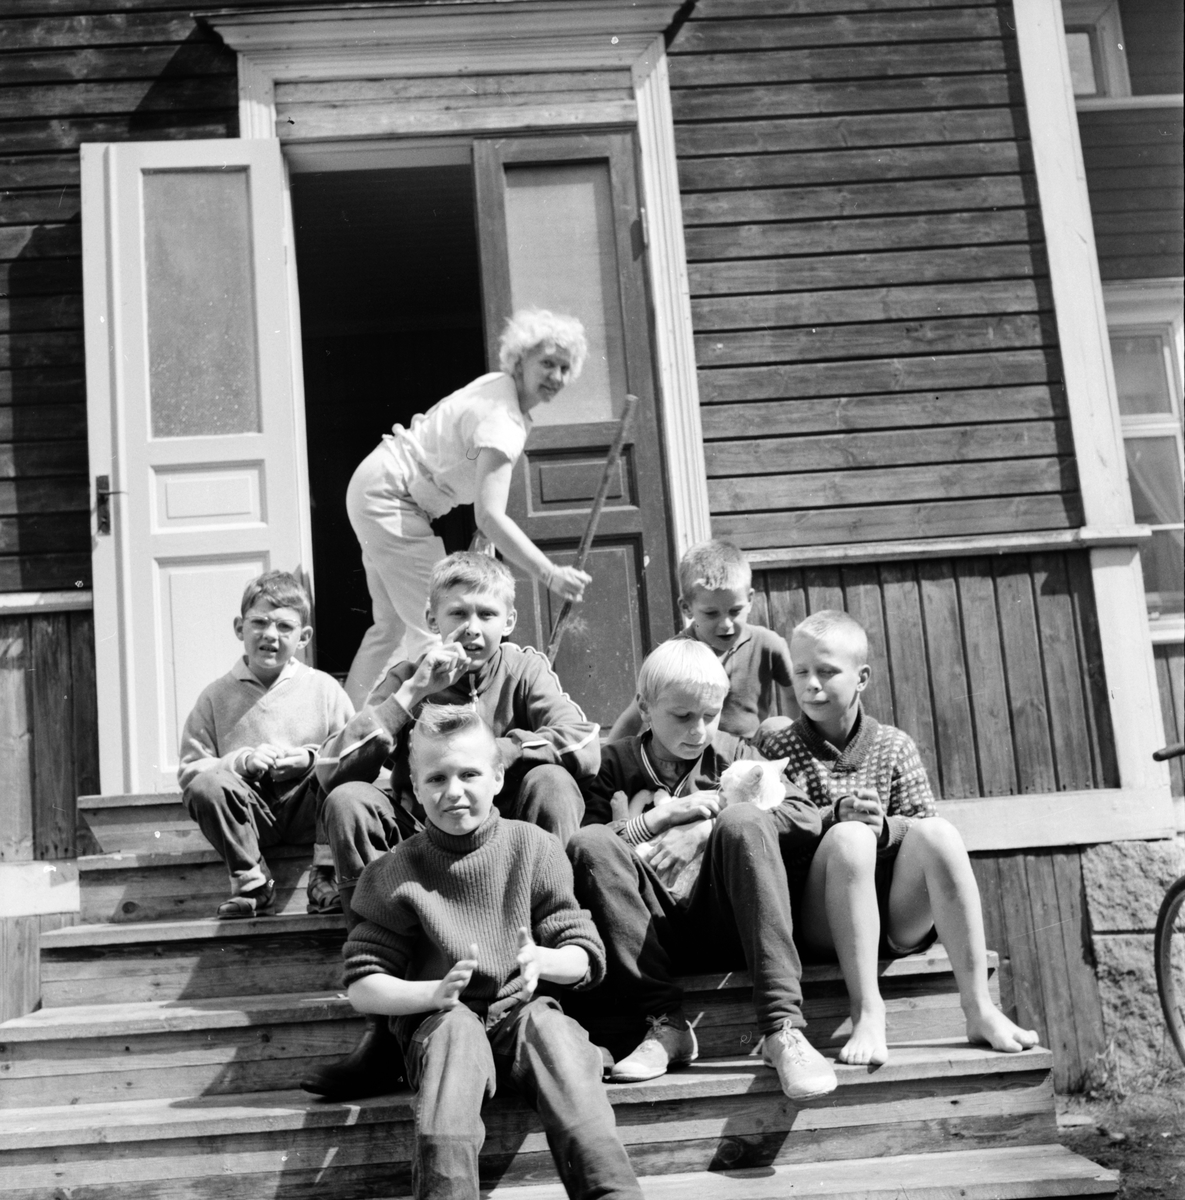 Arbrå,
Barnkoloni,
Öjungsbo,
5 Juli 1962